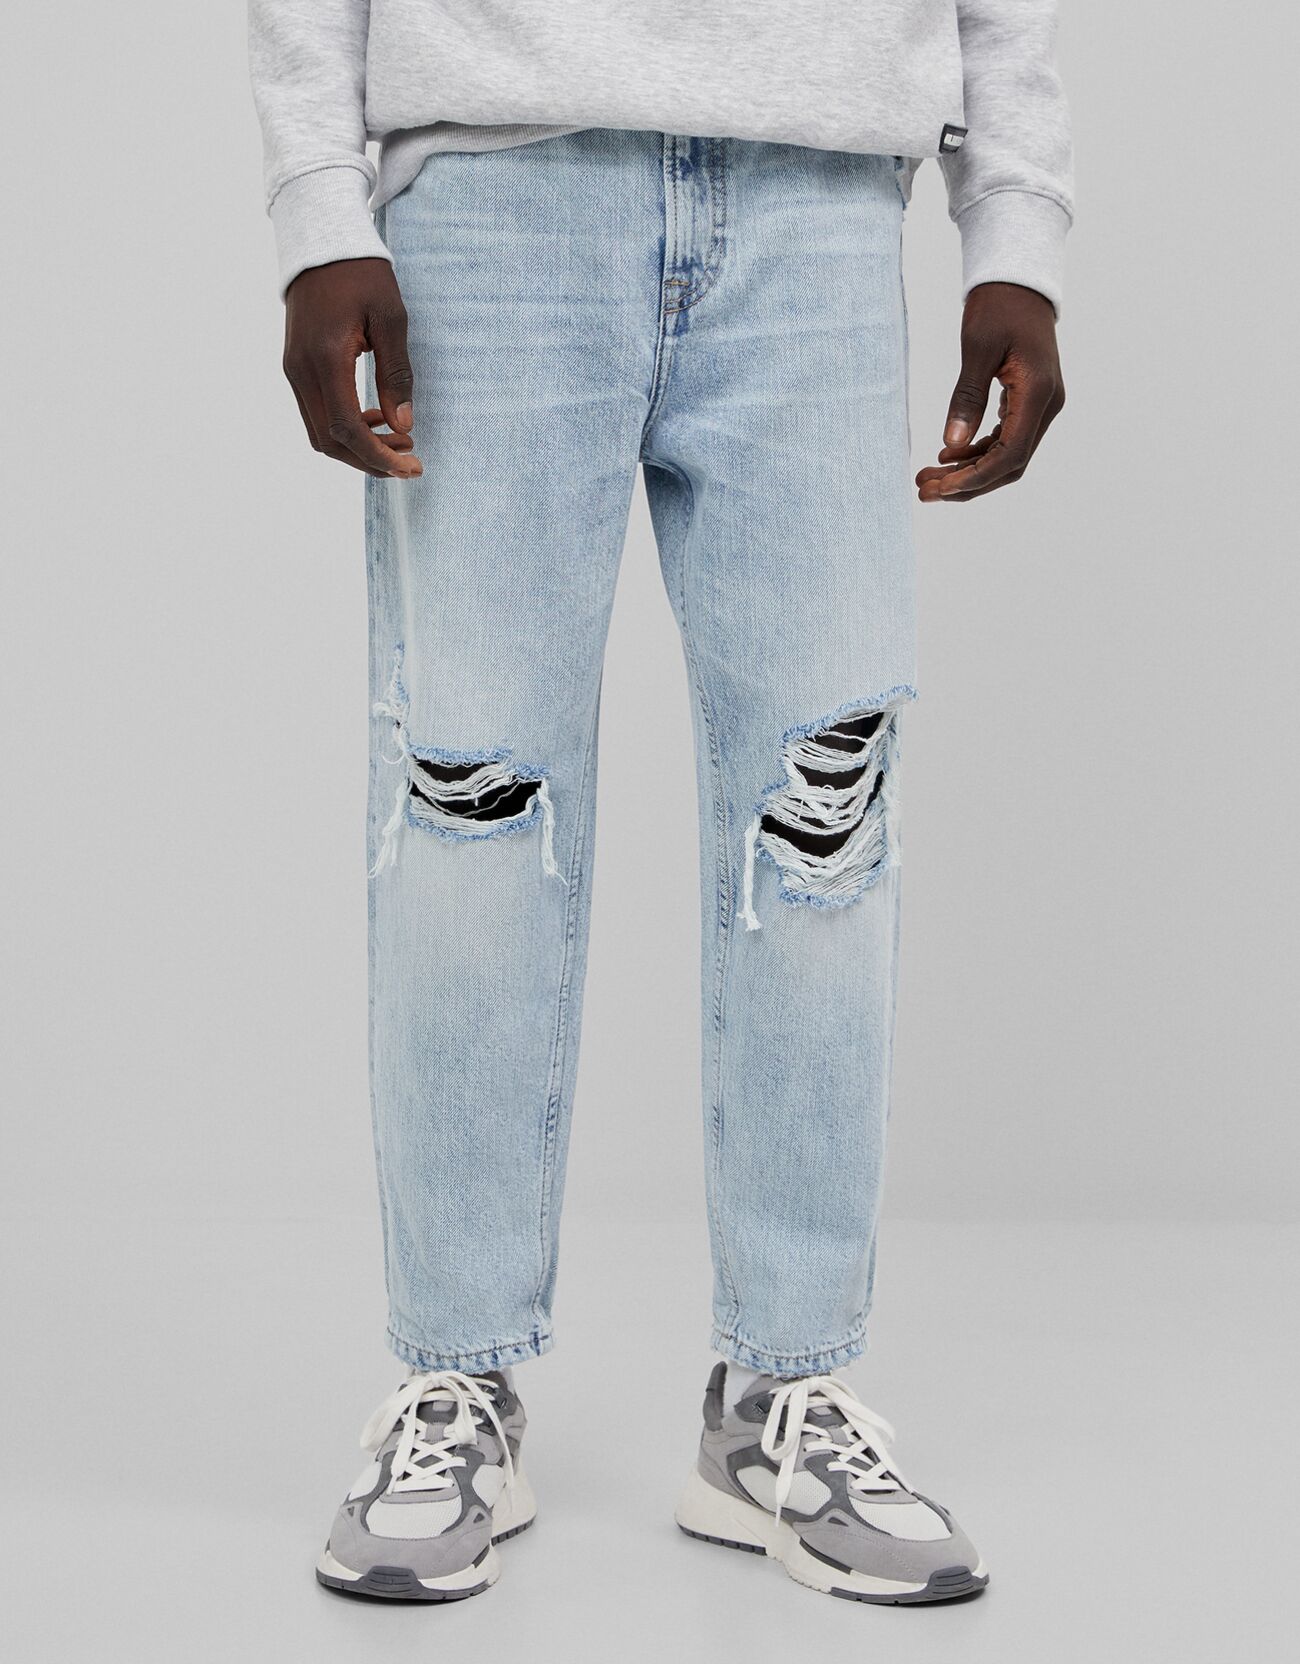 Artikel klicken und genauer betrachten! - Loose Fit Jeans Mit Rissen Color: Hellblau Size: 36 Material: Baumwolle Farbe: Hellblau Größe: 36 | im Online Shop kaufen